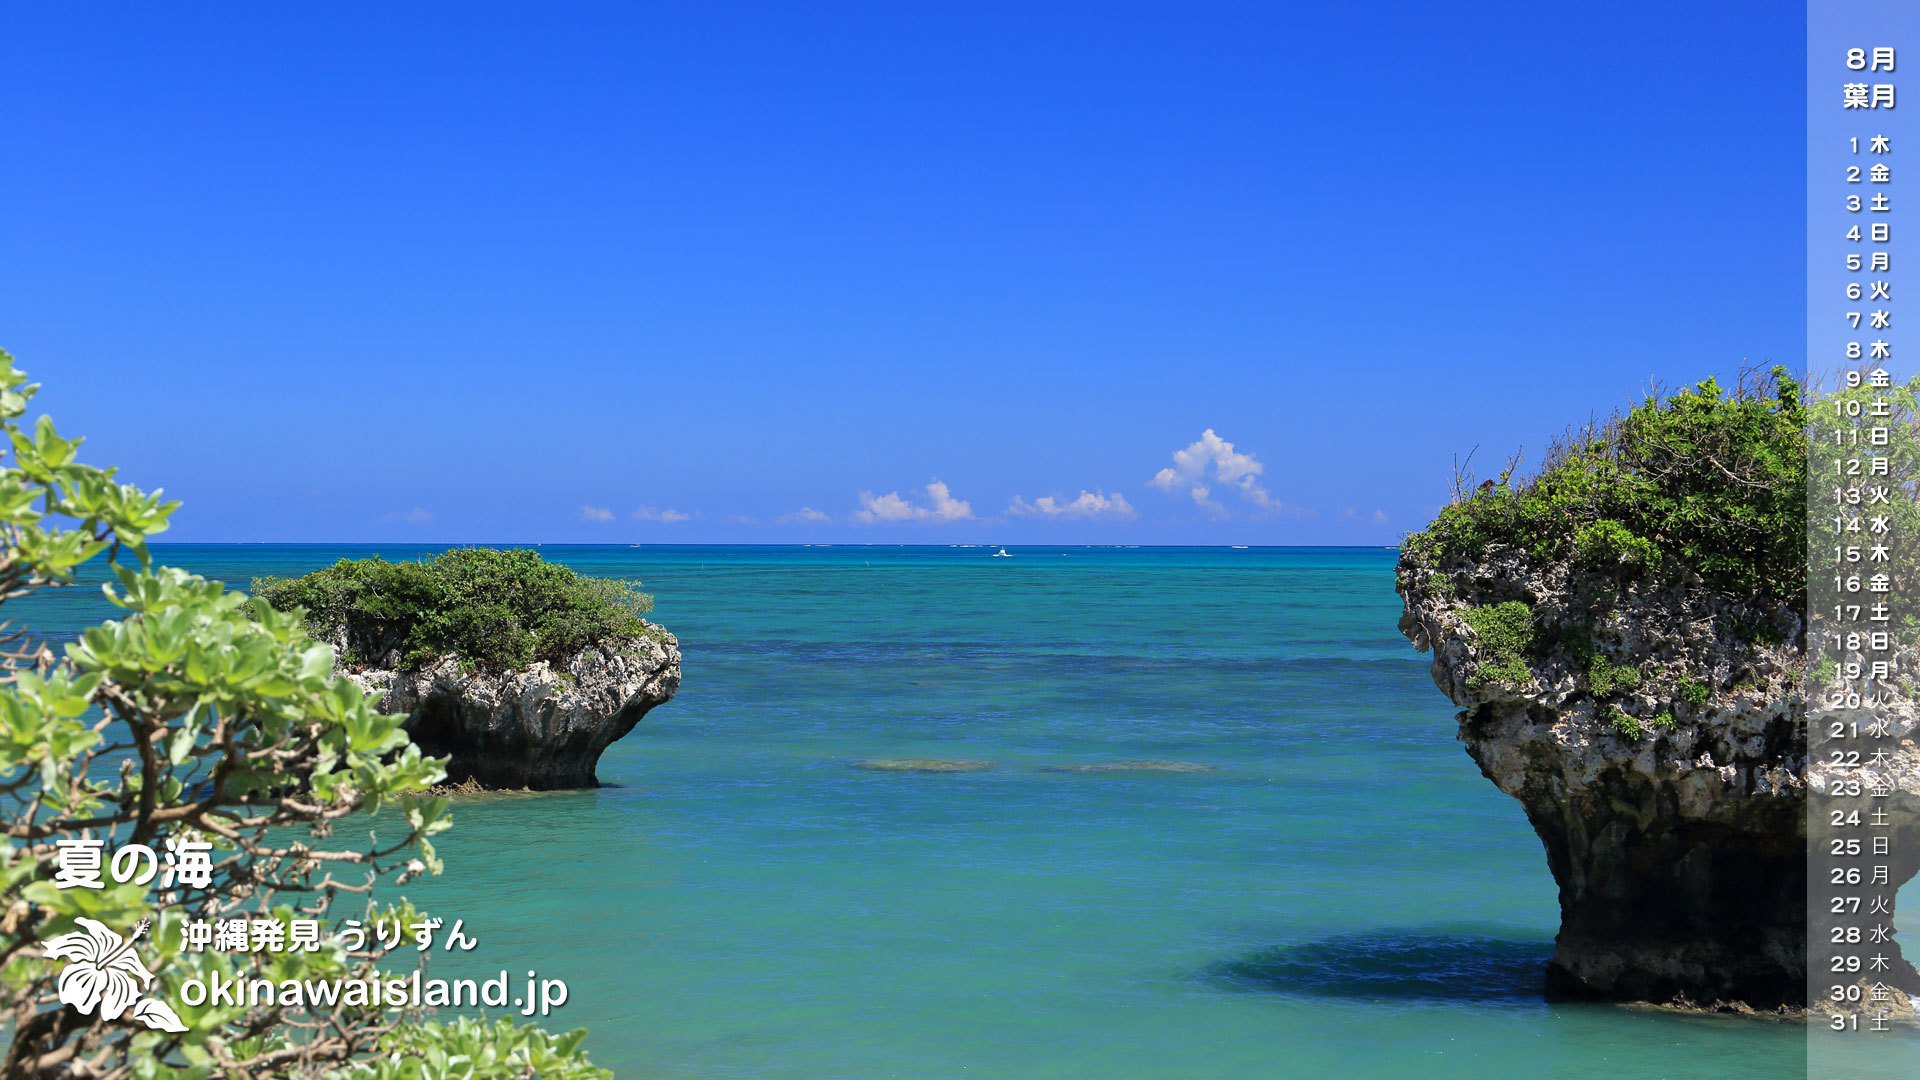 沖縄の風景 壁紙 デスクトップカレンダー 無料ダウンロード 夏の海 デスクトップカレンダー８月